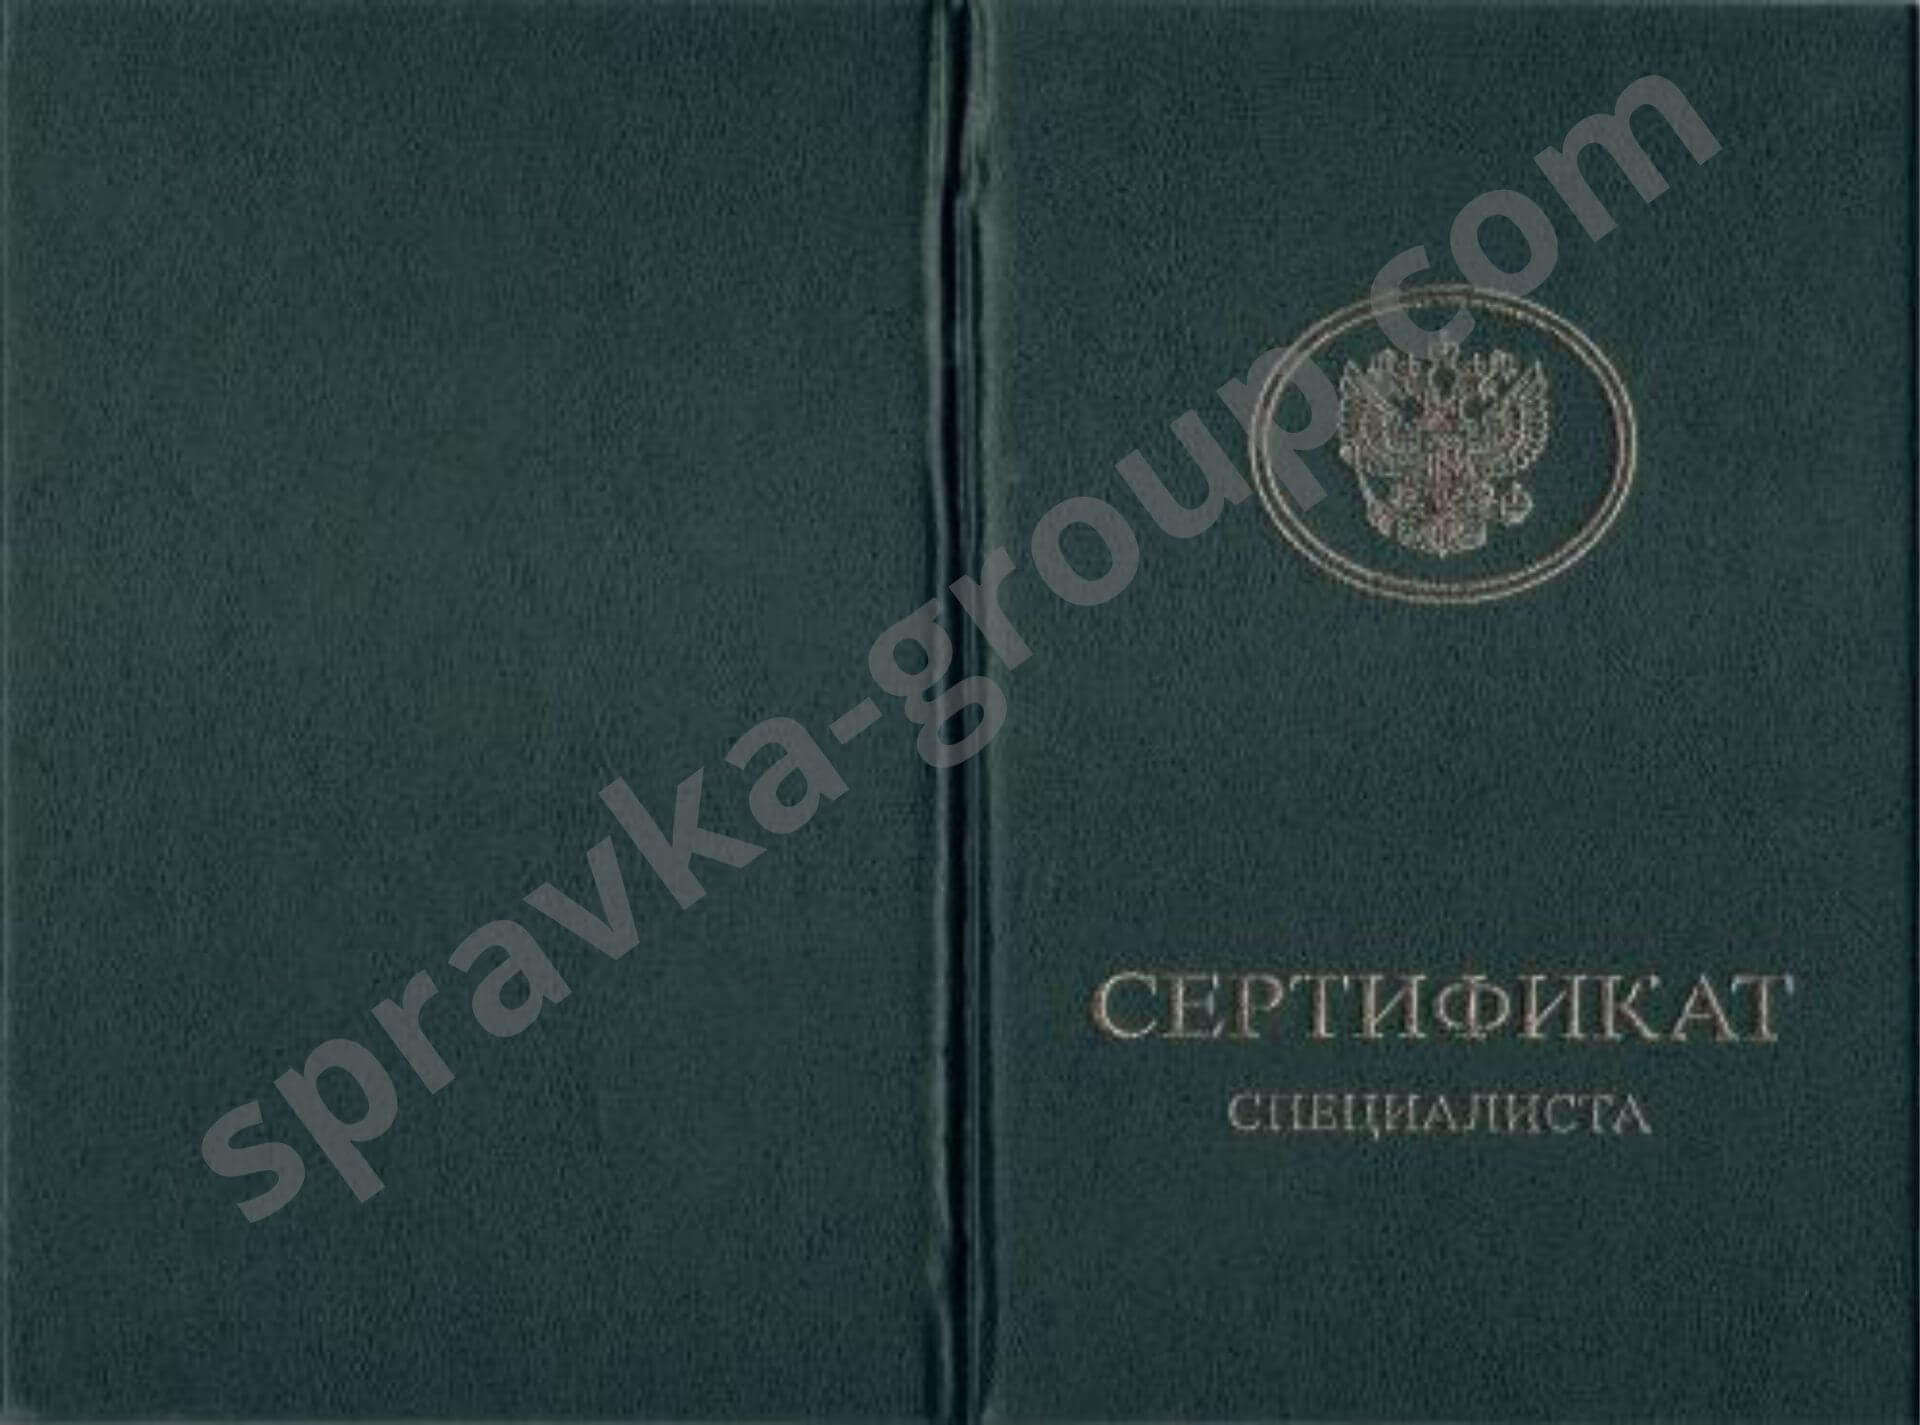 Купить сертификат санитарки в Москве, фото №3